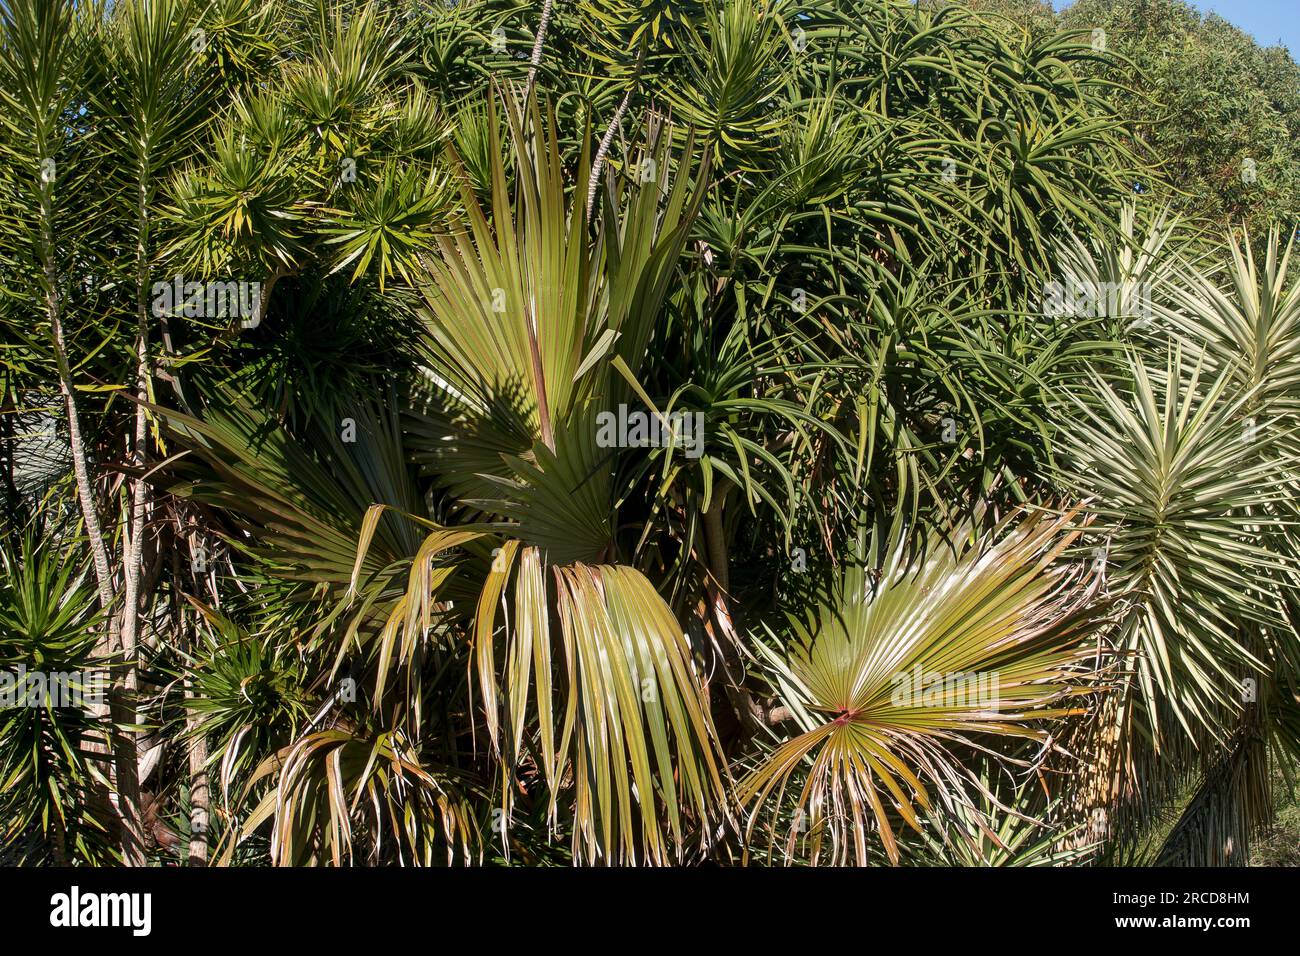 Gemischte Grünpflanzen im subtropischen australischen Privatgarten in Queensland. Mischung aus einheimischen und exotischen Arten von Bäumen und Sträuchern. Stockfoto